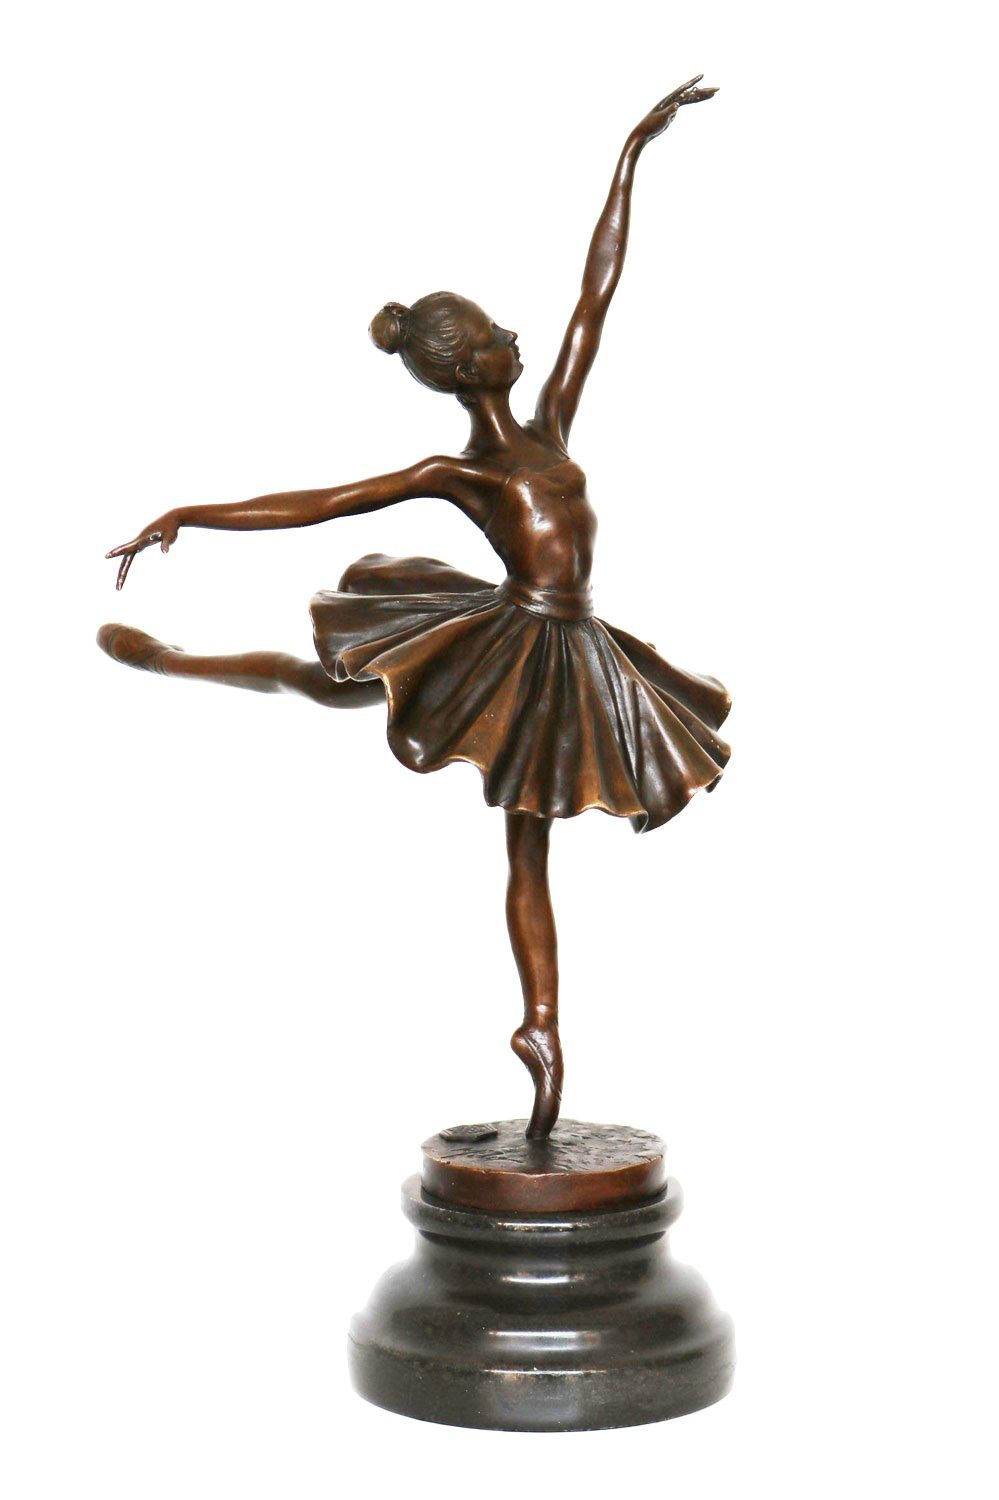 Aubaho Skulptur Bronzeskulptur Tänzerin Figur Repl Ballerina Ballett Degas nach Bronze